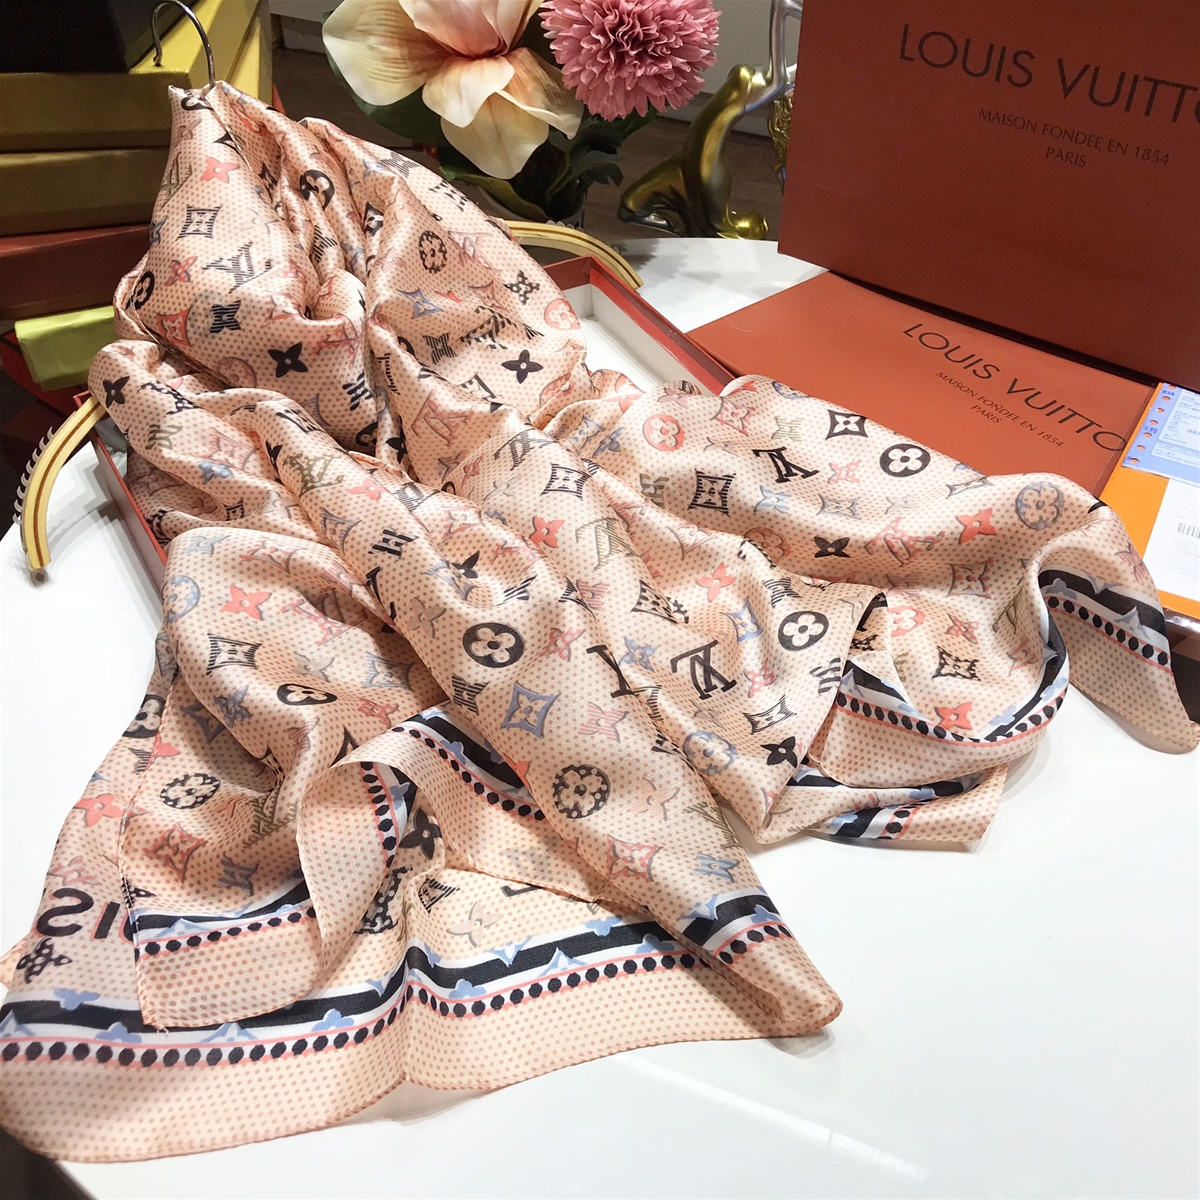 Khăn hiệu Louis Vuitton chữ đủ màu sắc